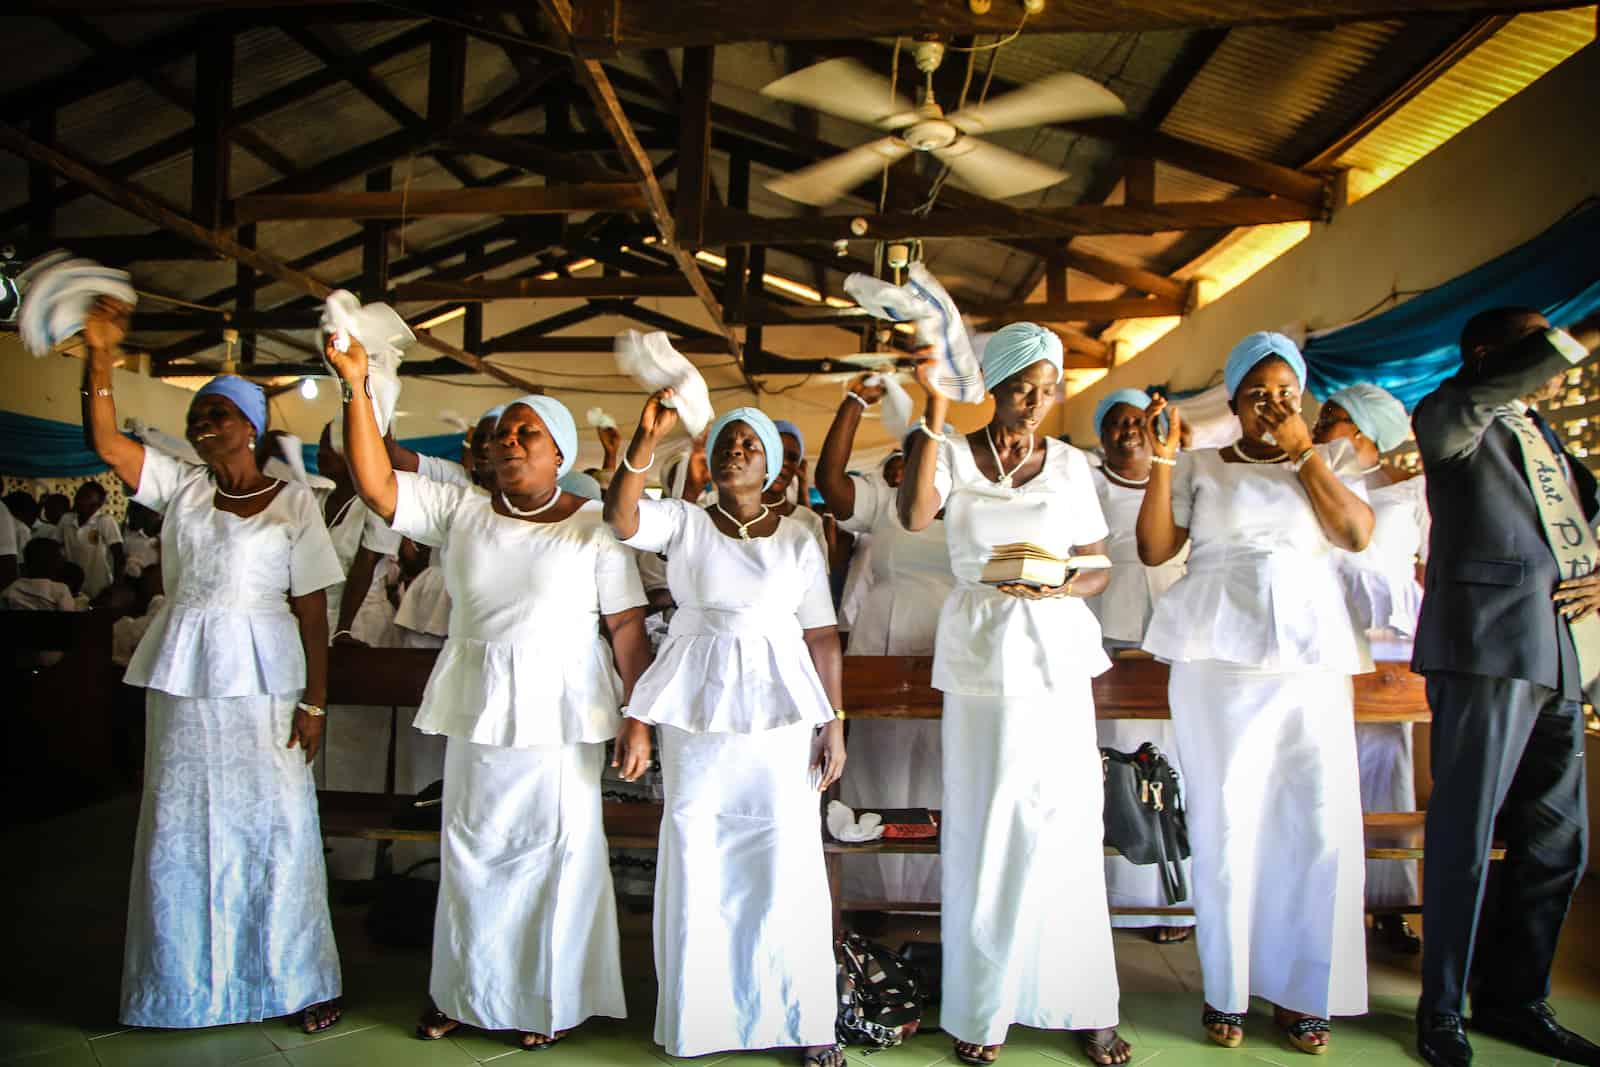 Women sing in a church in Ghana, wearing all white.